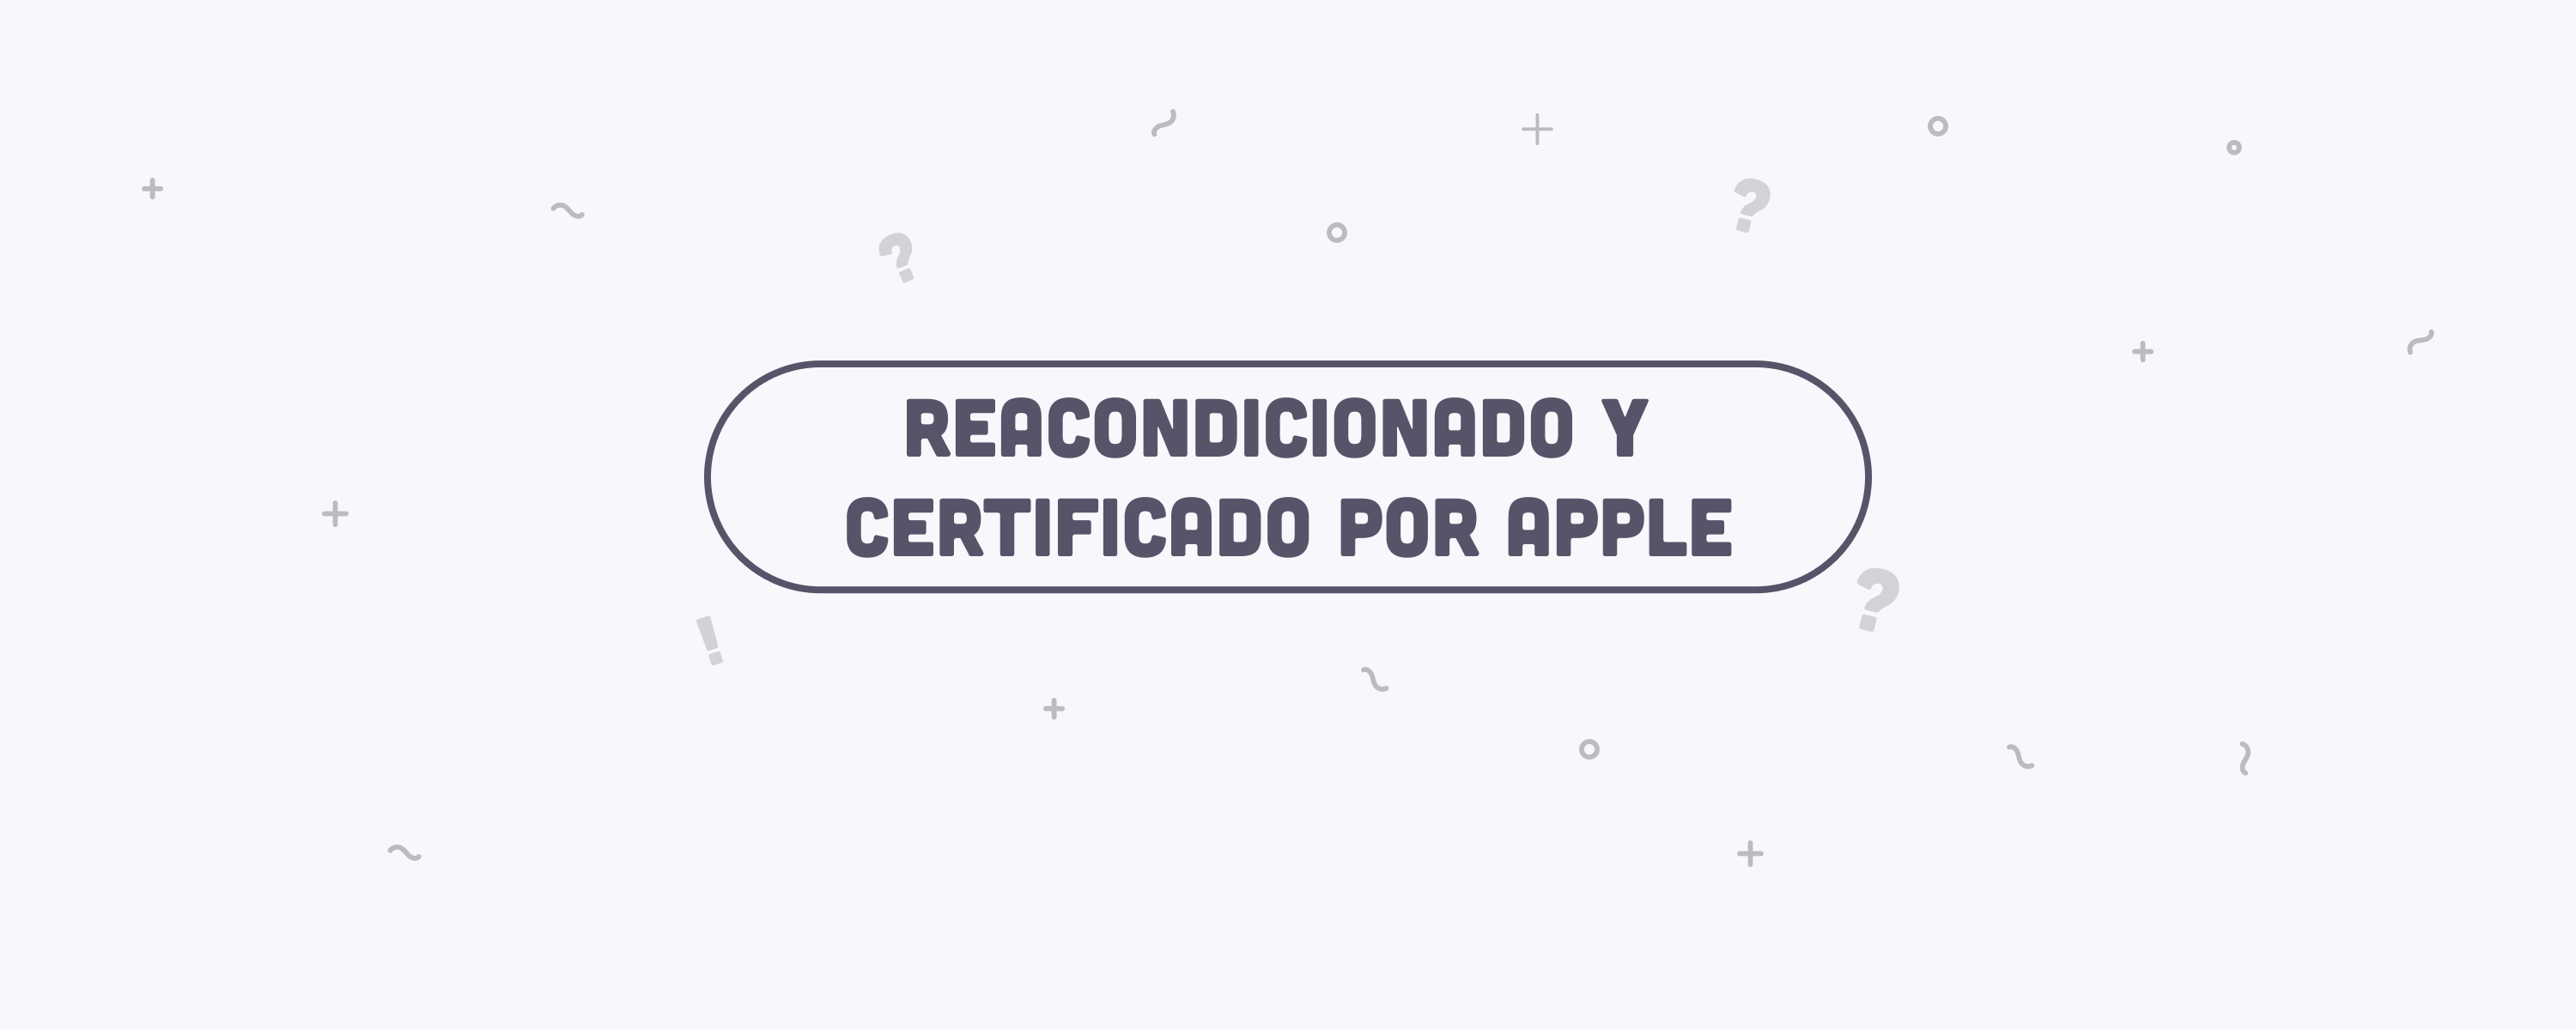 ¿Qué es el programa Reacondicionado y certificado por Apple?